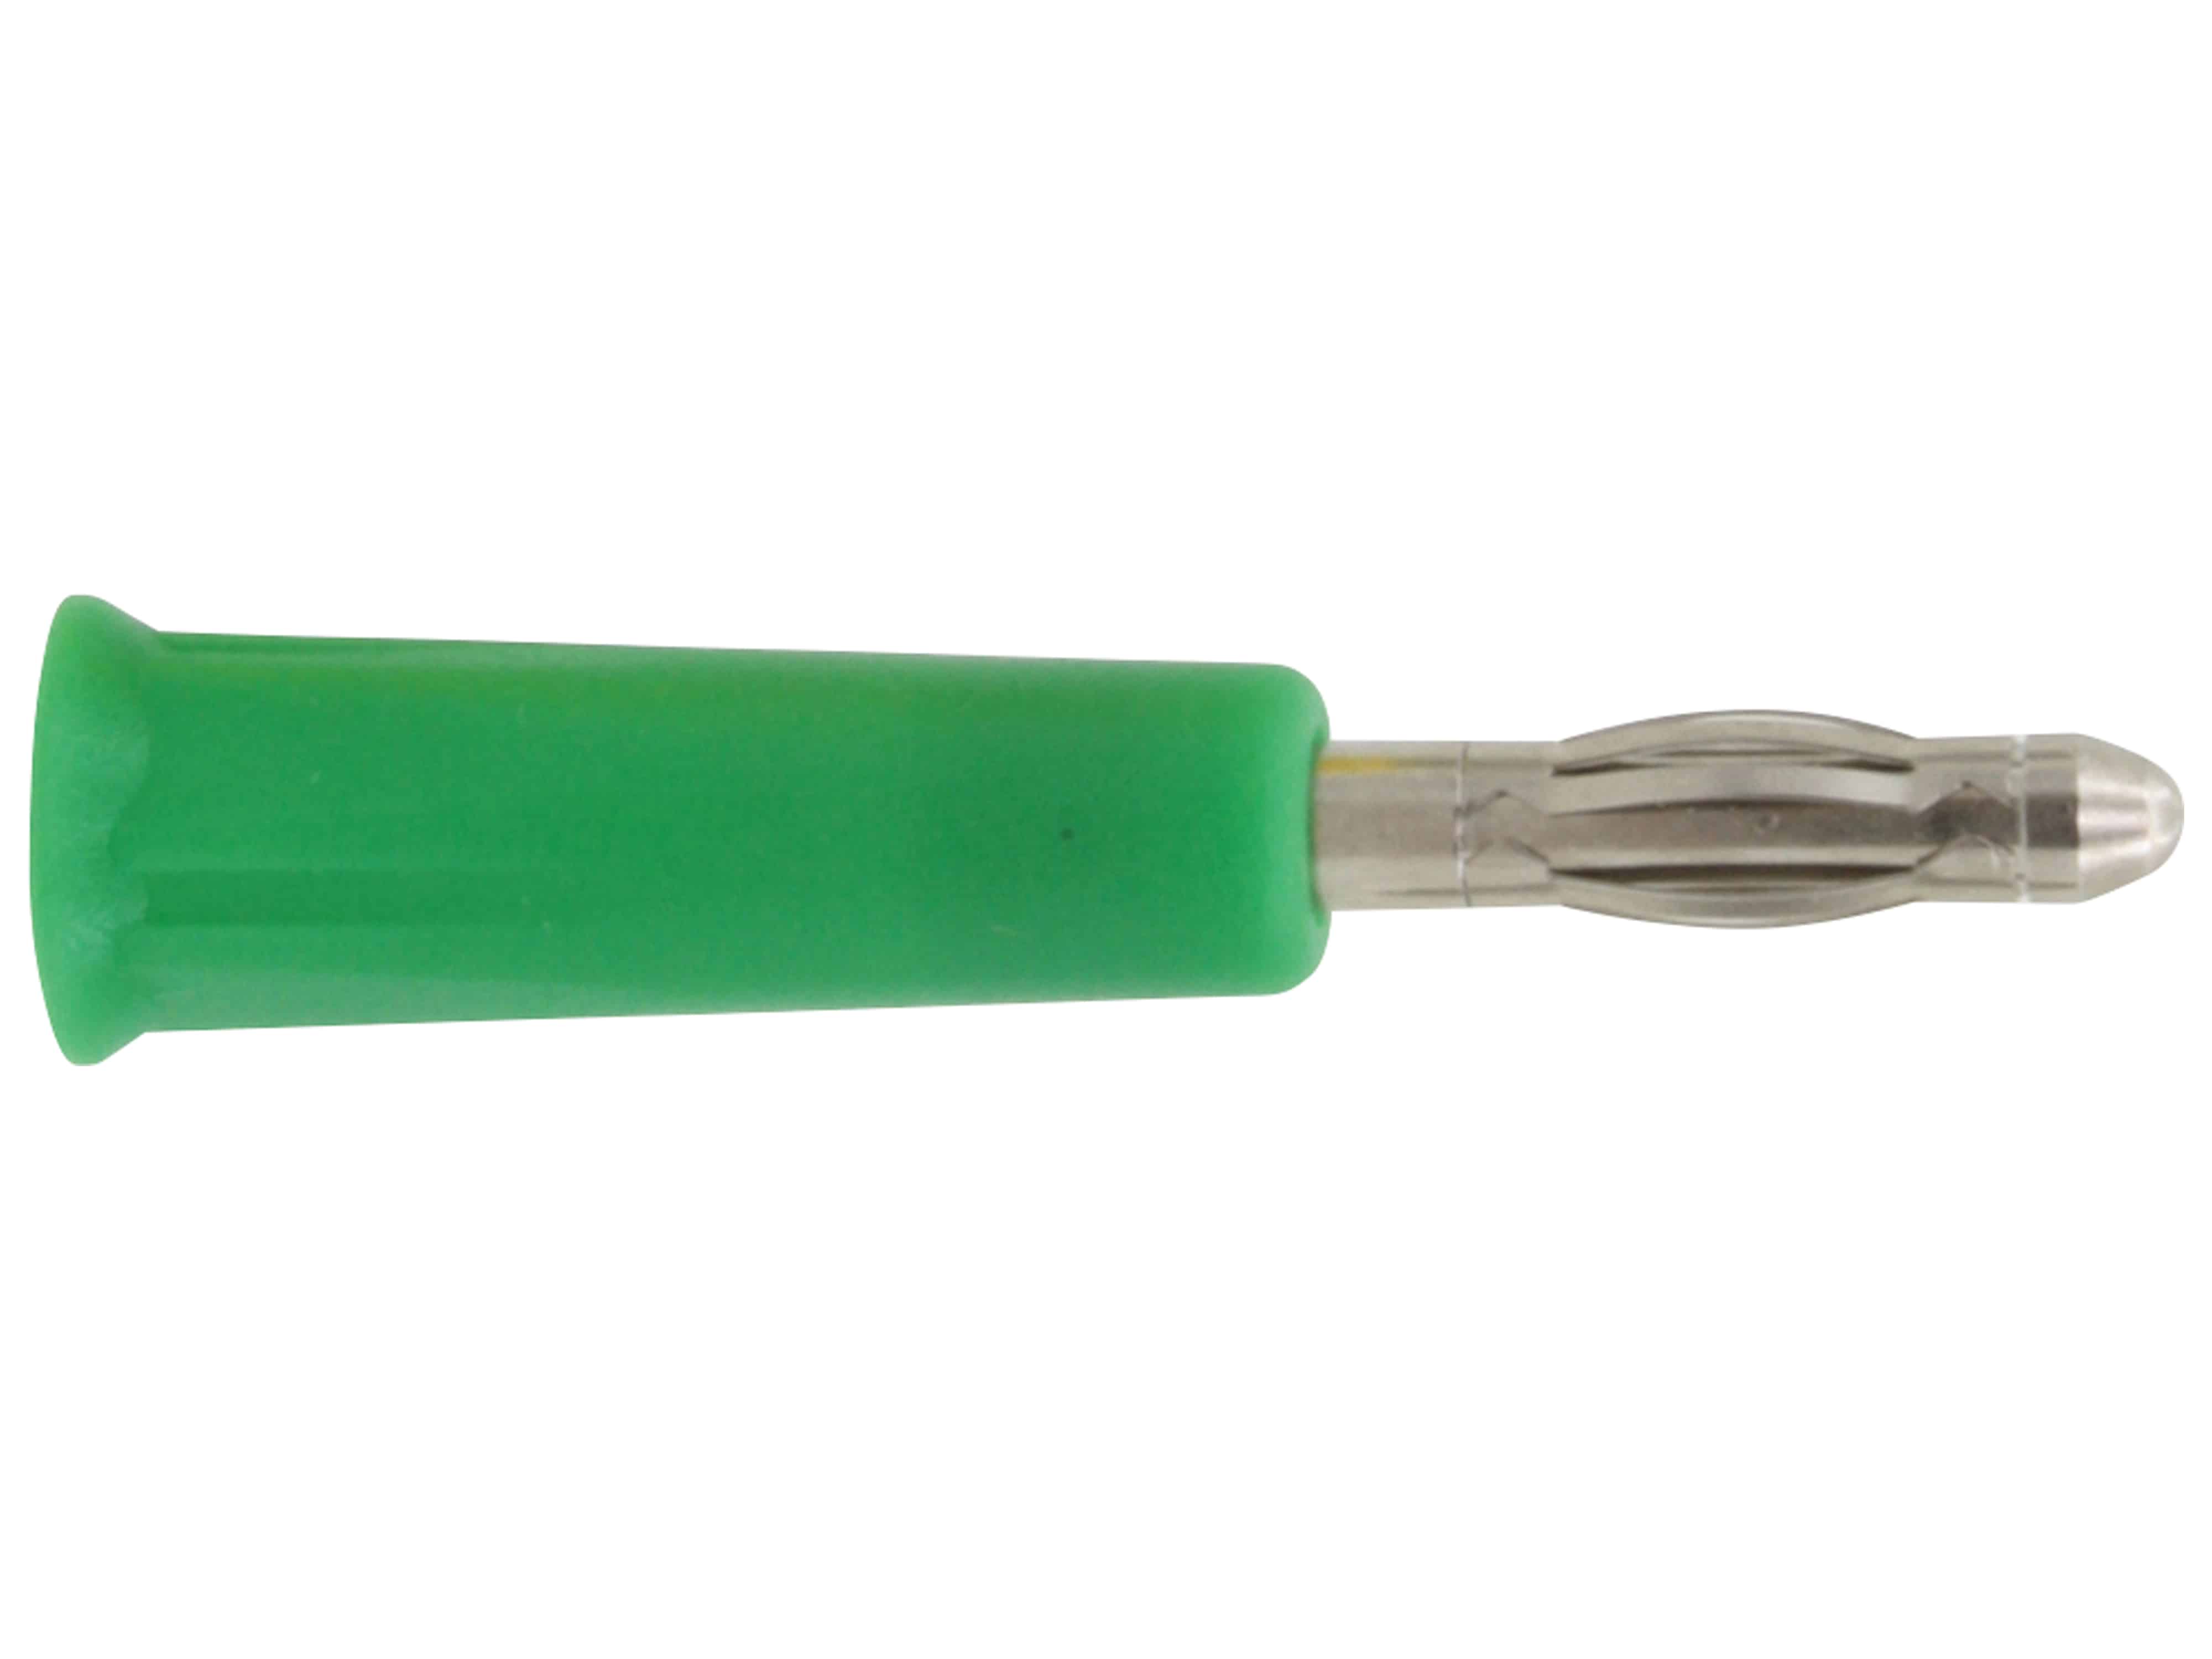 DONAU ELEKTRONIK Bananenstecker, 4mm, grün, 1014